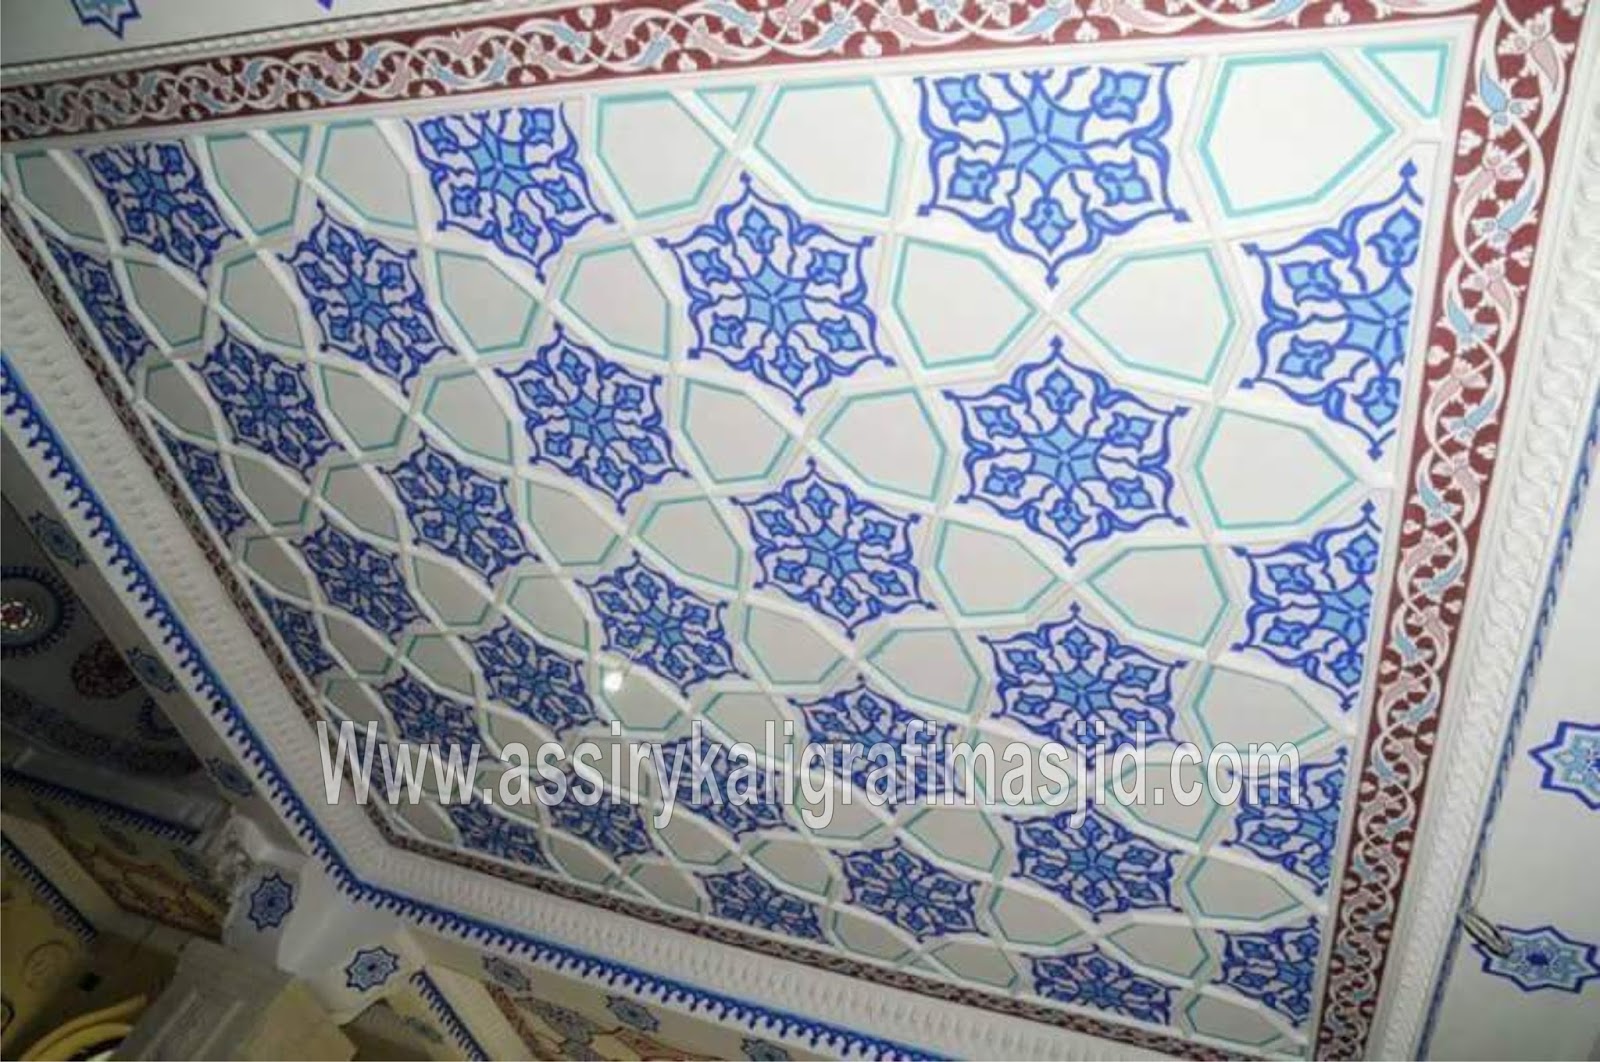  Motif Plafon  Assiry Kaligrafi Masjid